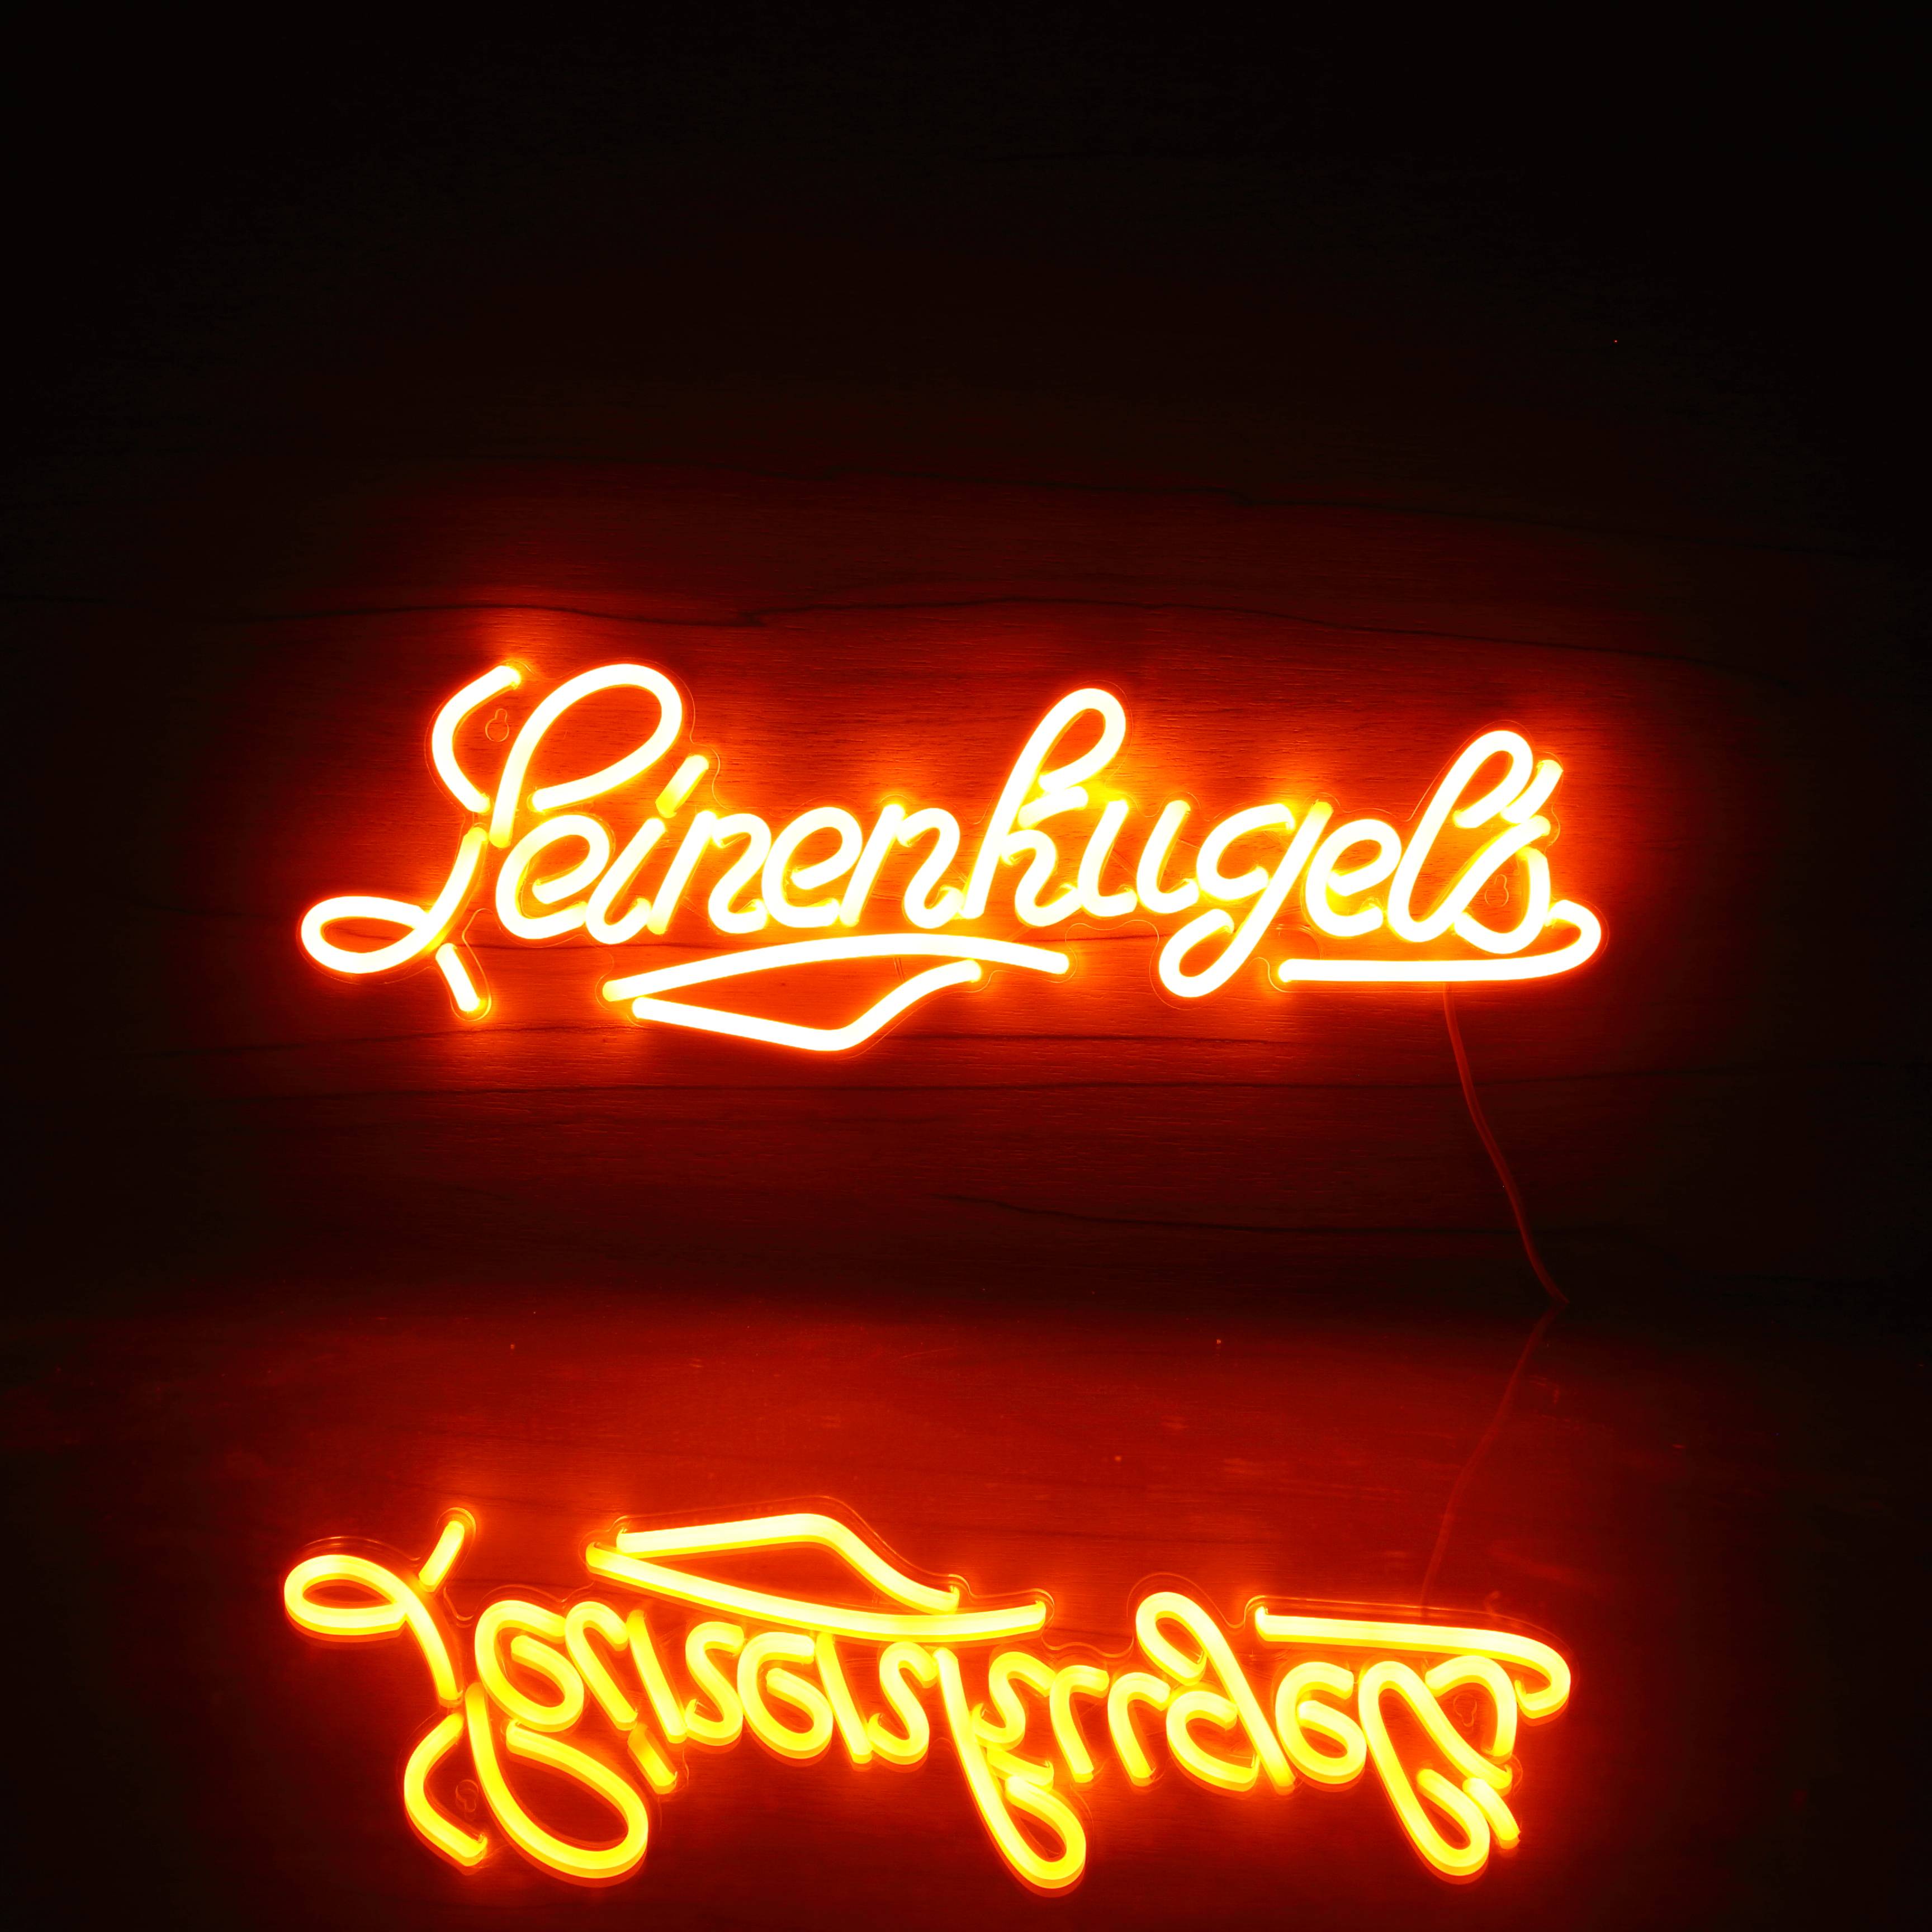 Leinenhugels Bar Neon LED Sign